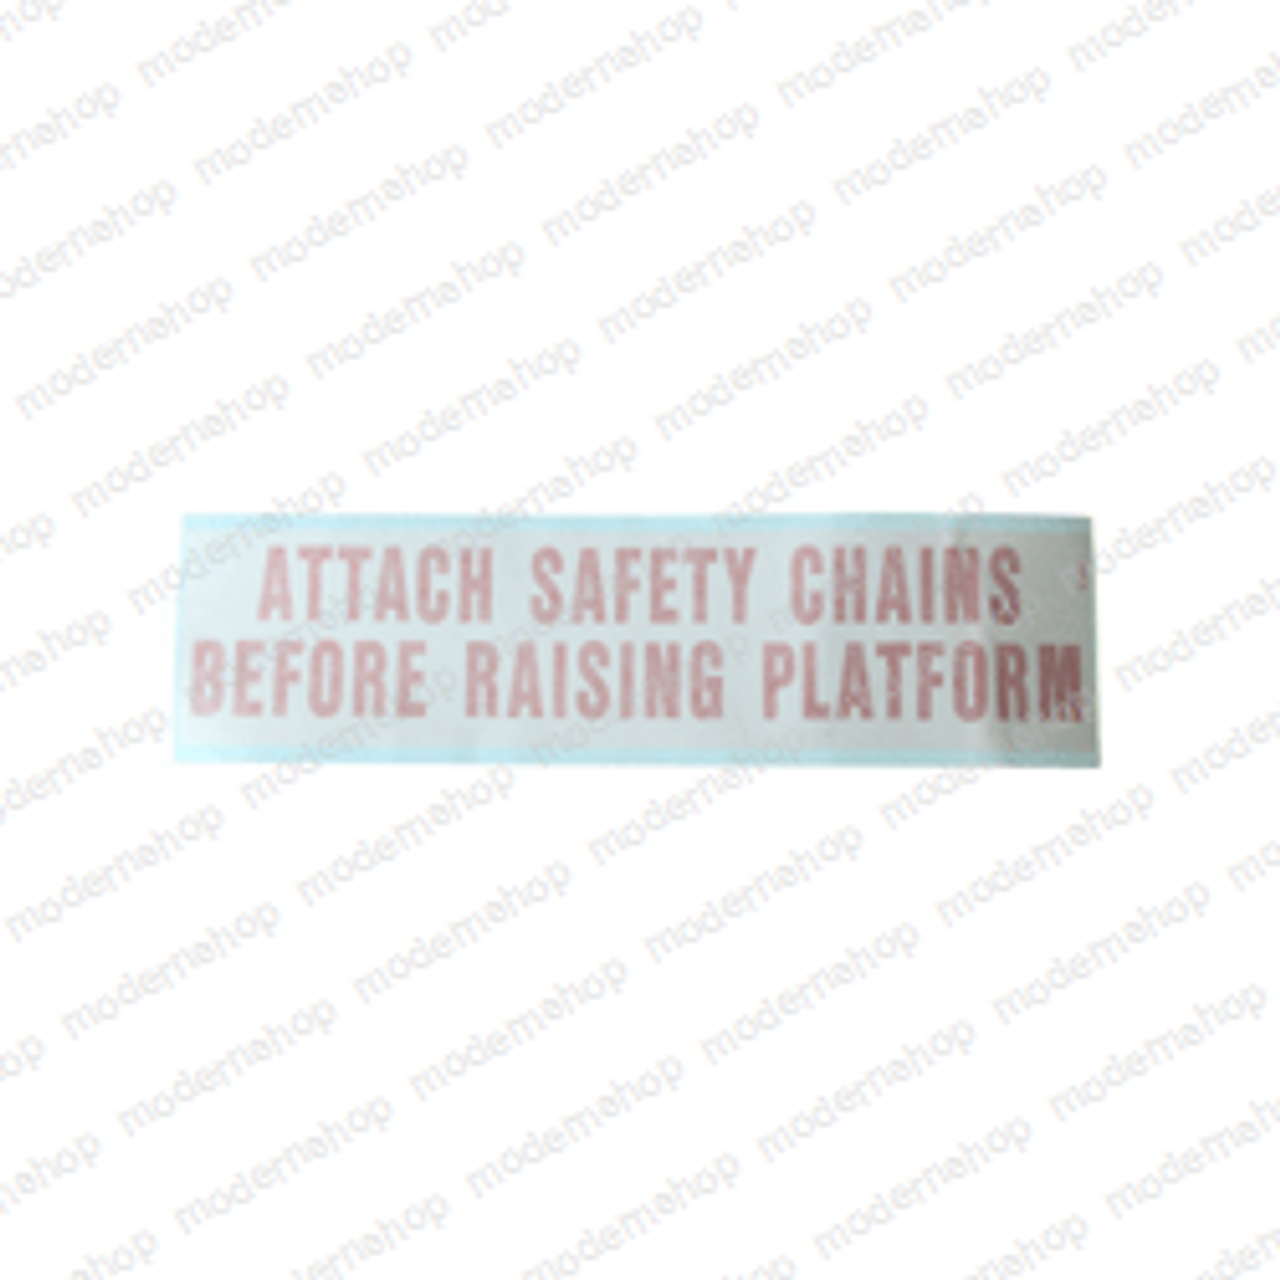 11064: Marklift DECAL - ATTACH SAFETY CHAIN